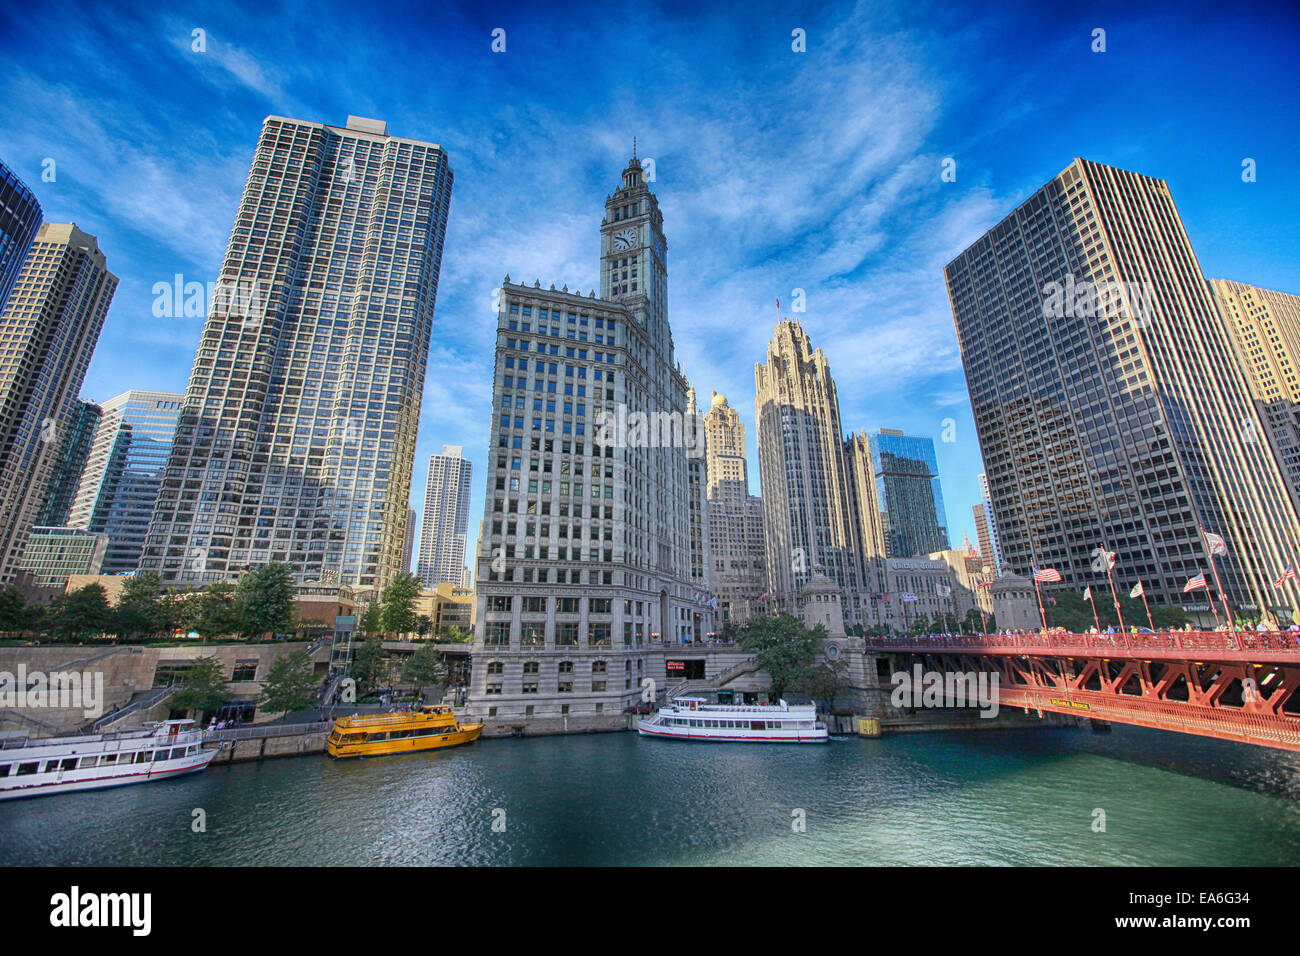 City skyline, Chicago, Illinois, United States Stock Photo